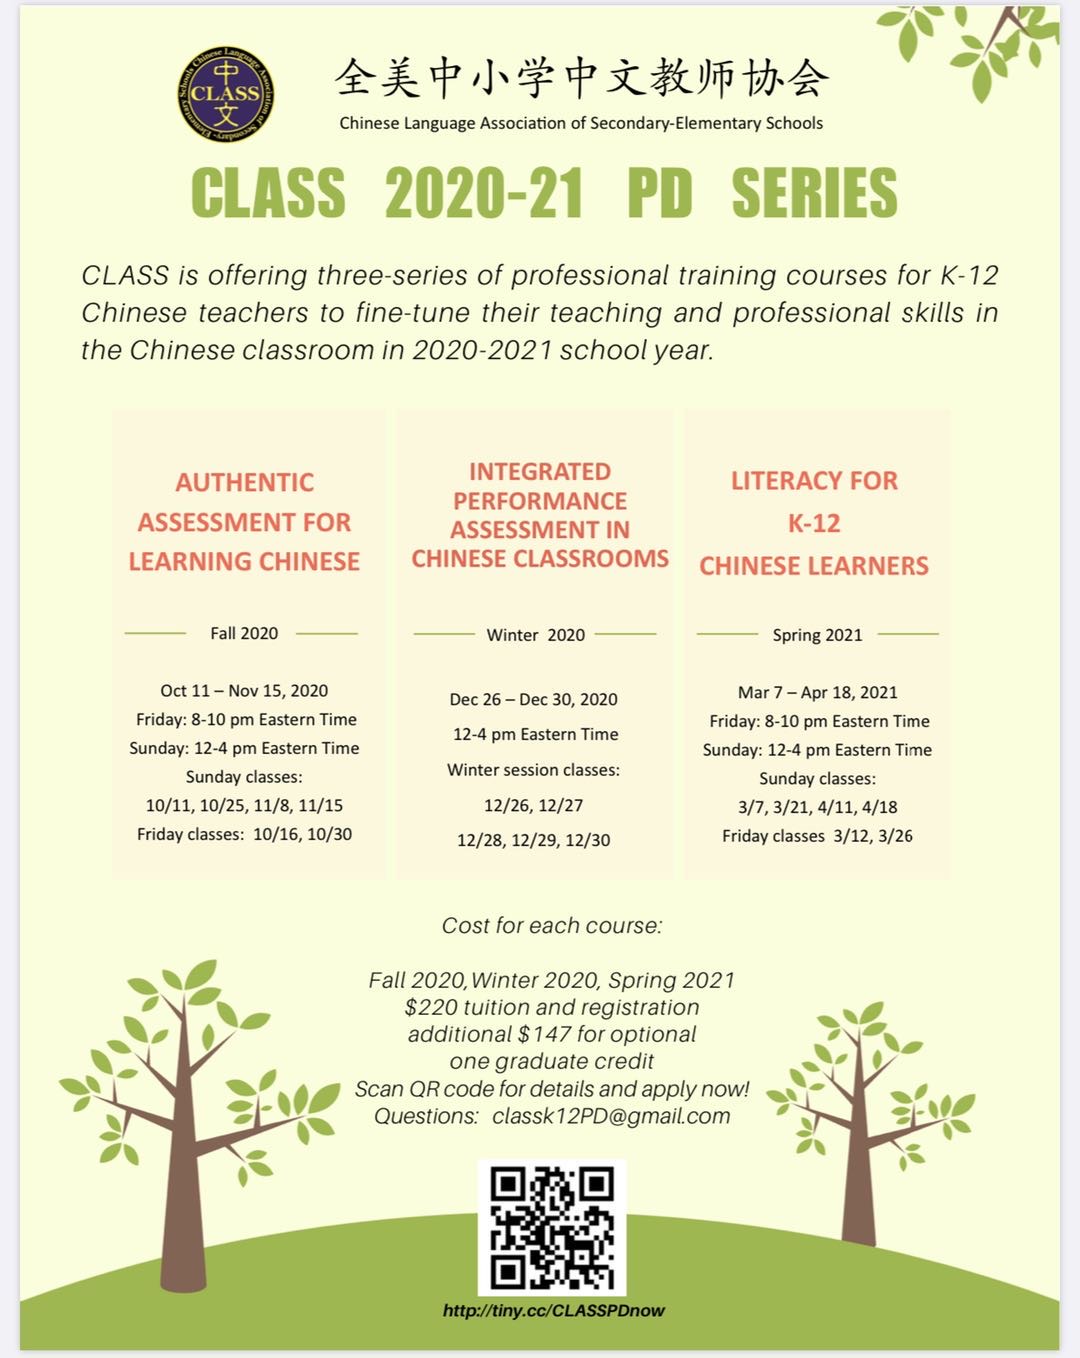 CLASS 2020-2021 PD Series